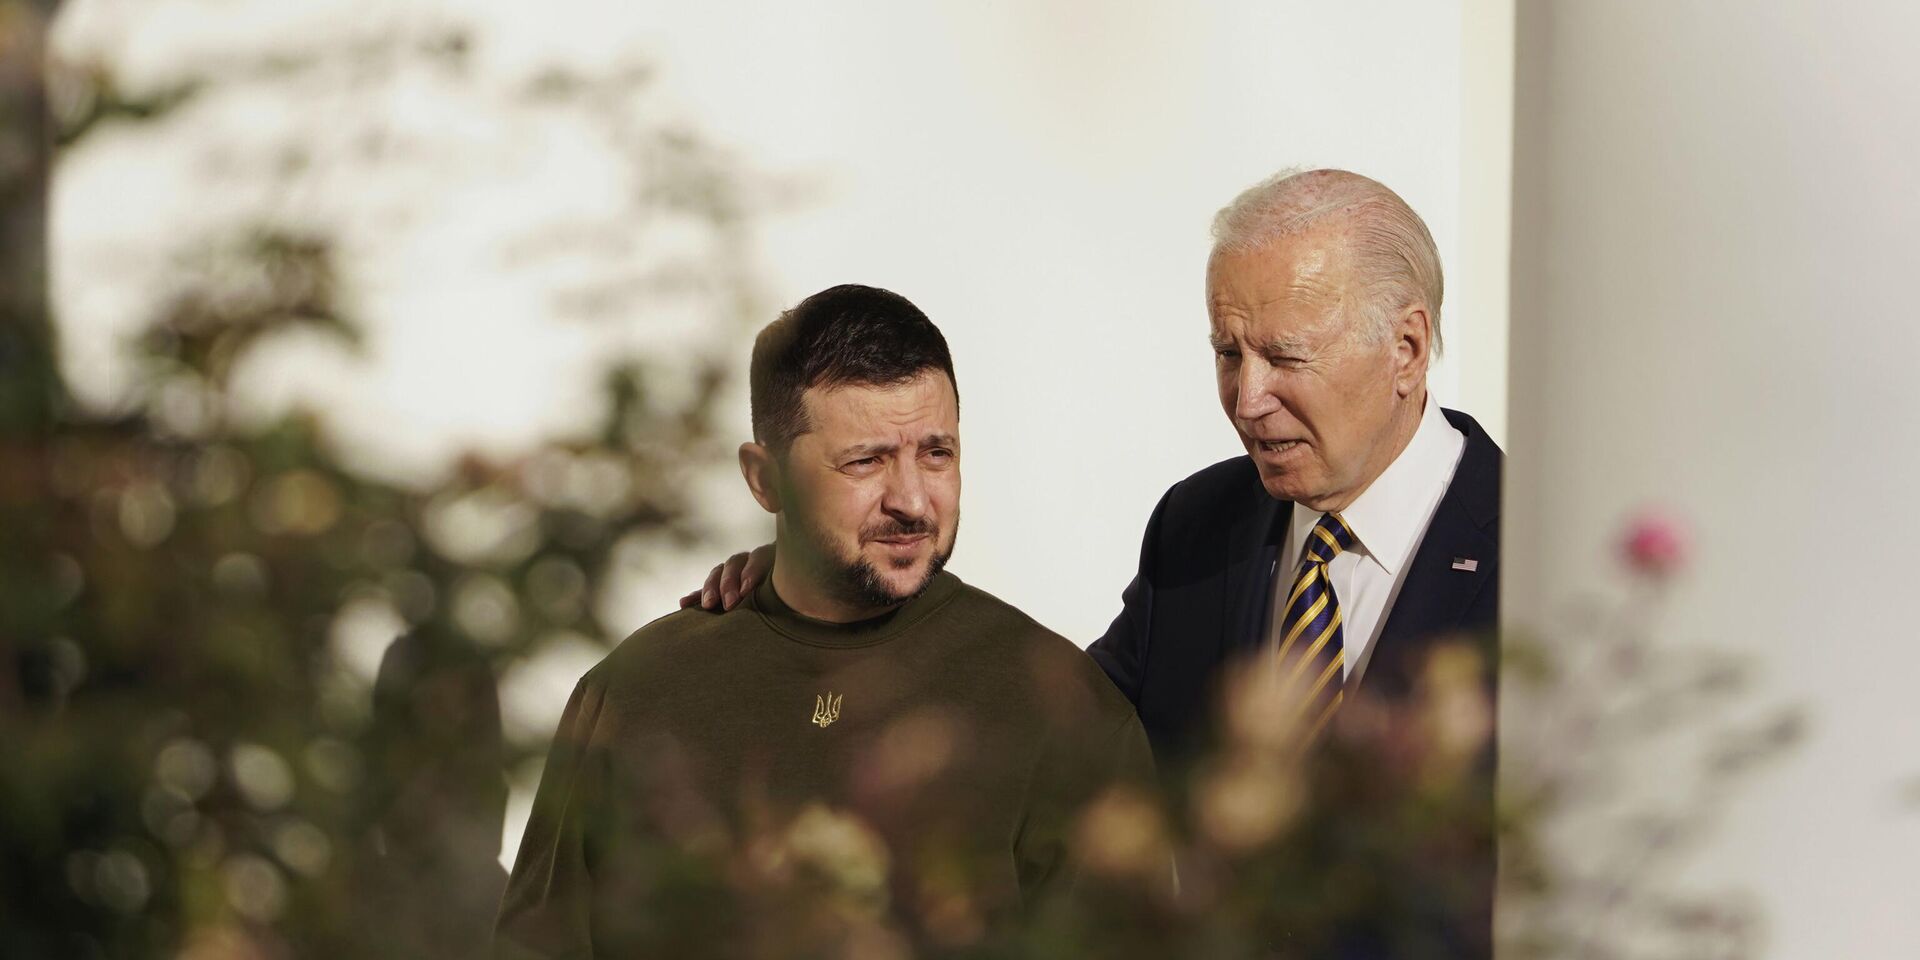 Президент США Джо Байден и президент Украины Владимир Зеленский во время встречи в Белом доме в Вашингтоне. 21 декабря 2022 года - ИноСМИ, 1920, 23.03.2023